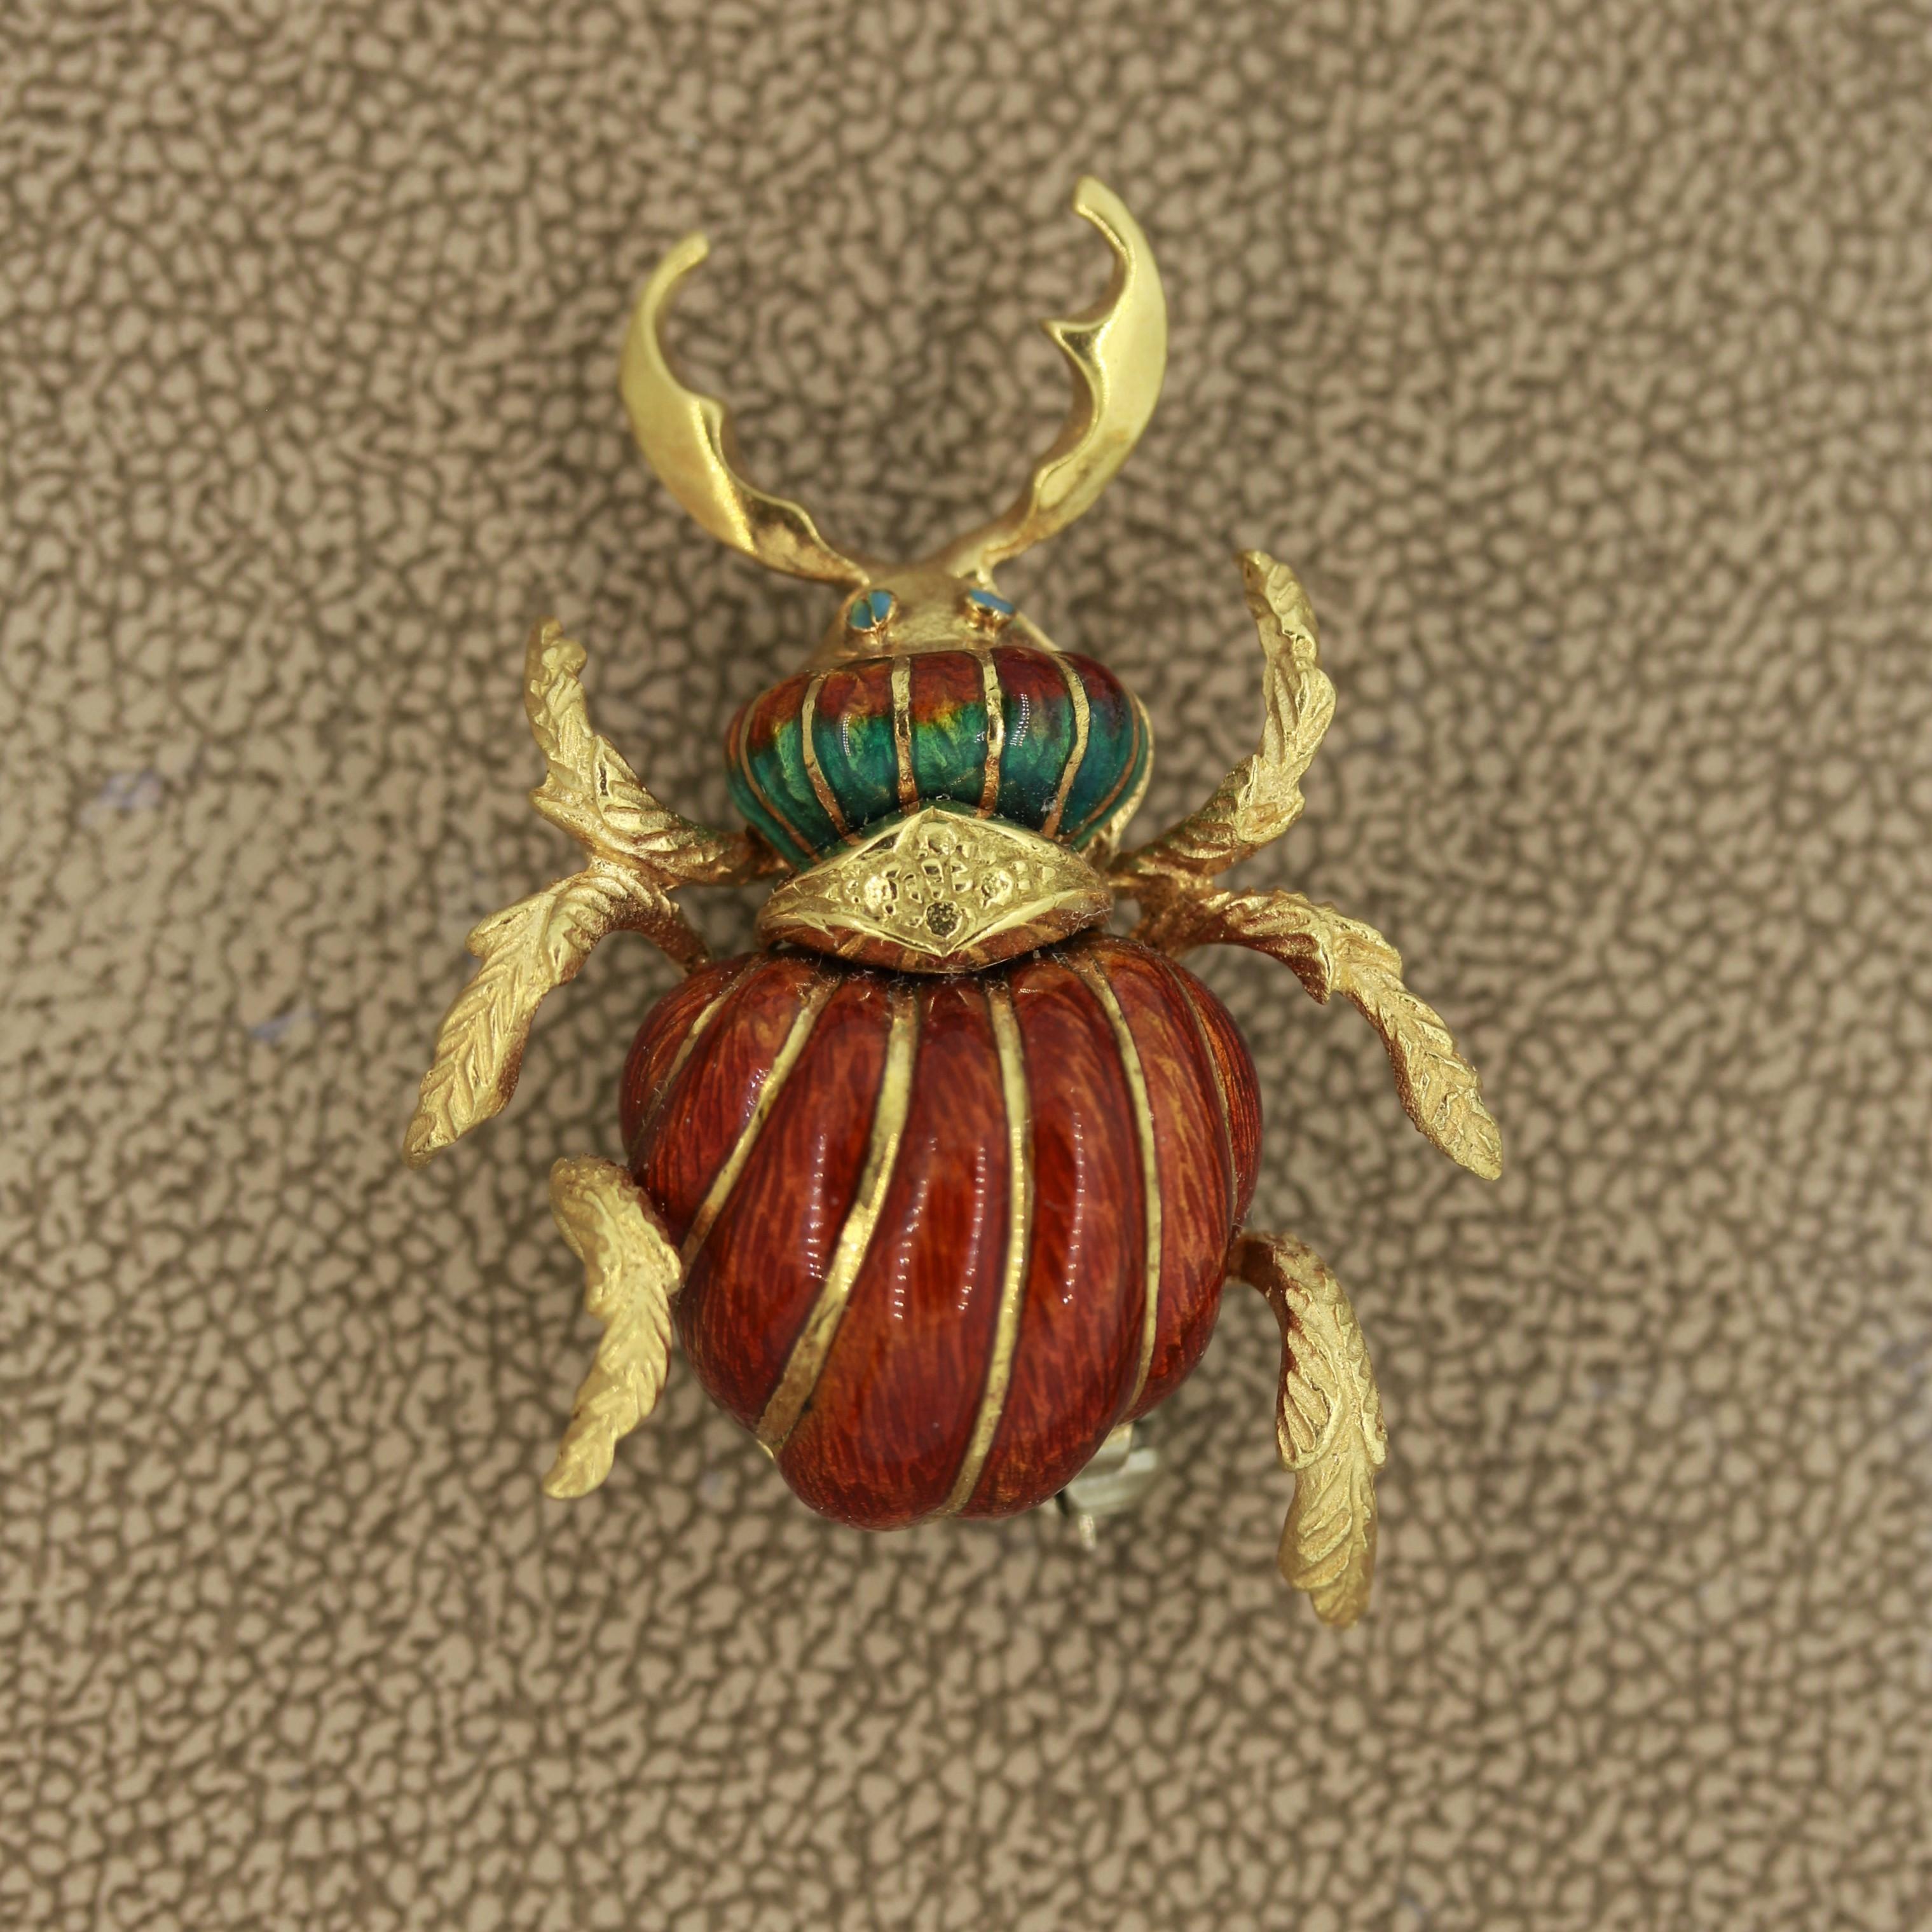 Une belle broche de fabrication italienne des années 1950 représentant un puissant scarabée à cornes. Il est recouvert d'émail peint à la main qui ajoute de la couleur et du réalisme à la pièce. Il s'agit d'un complément idéal à toute